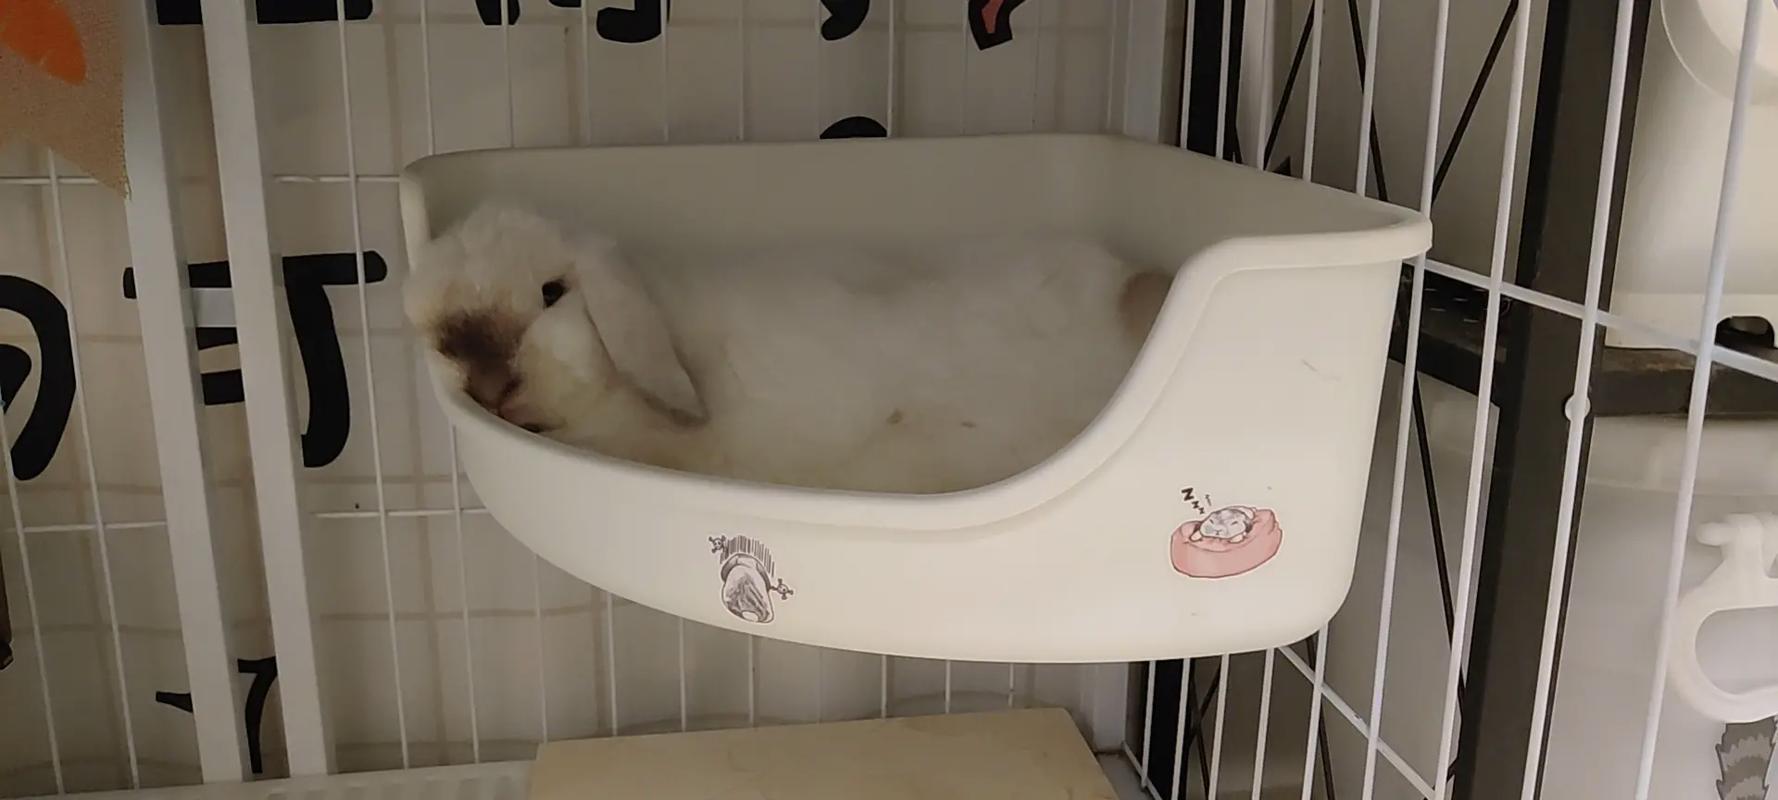 兔子晚上睡觉吗